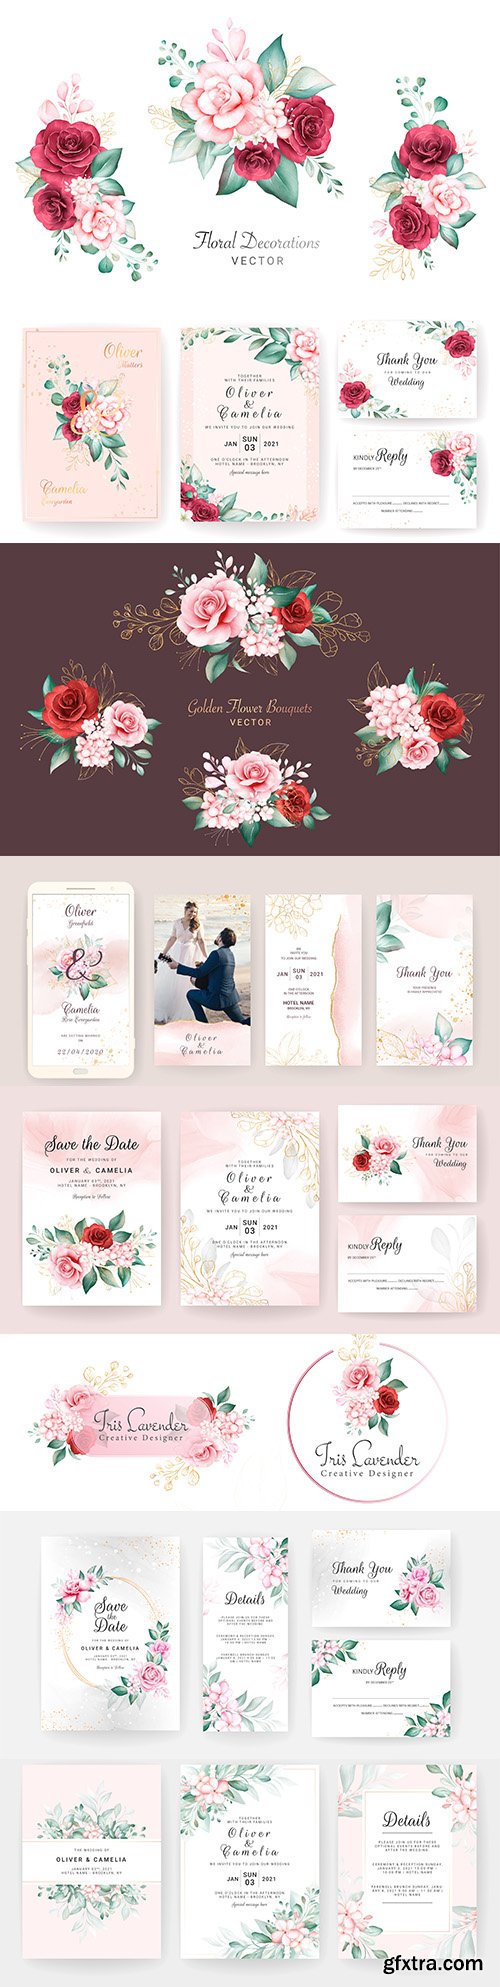 Watercolor bouquets wedding invitation and logo design
